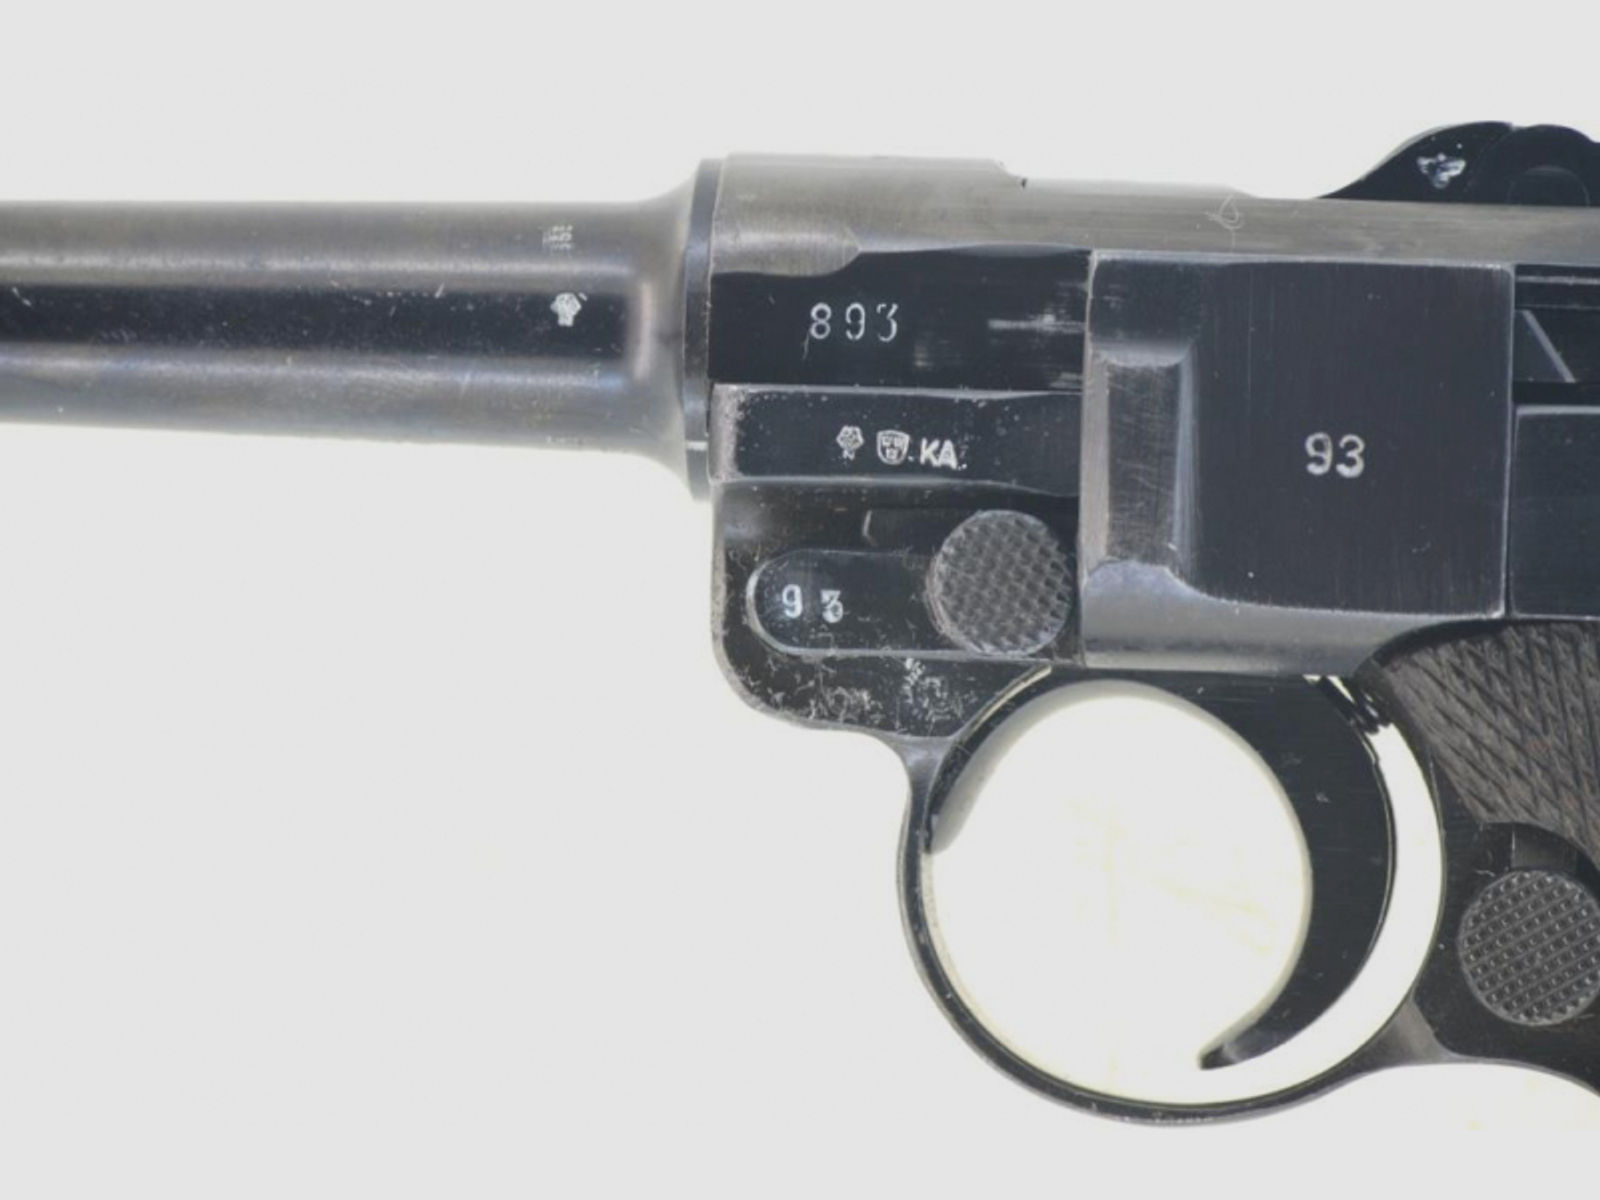 Pistole Wehrmacht Ordonnanzwaffe Mauser "42" P 08 Luger 08 Kal. 9 mm Para Bj. 1940 WaA, sehr schön!